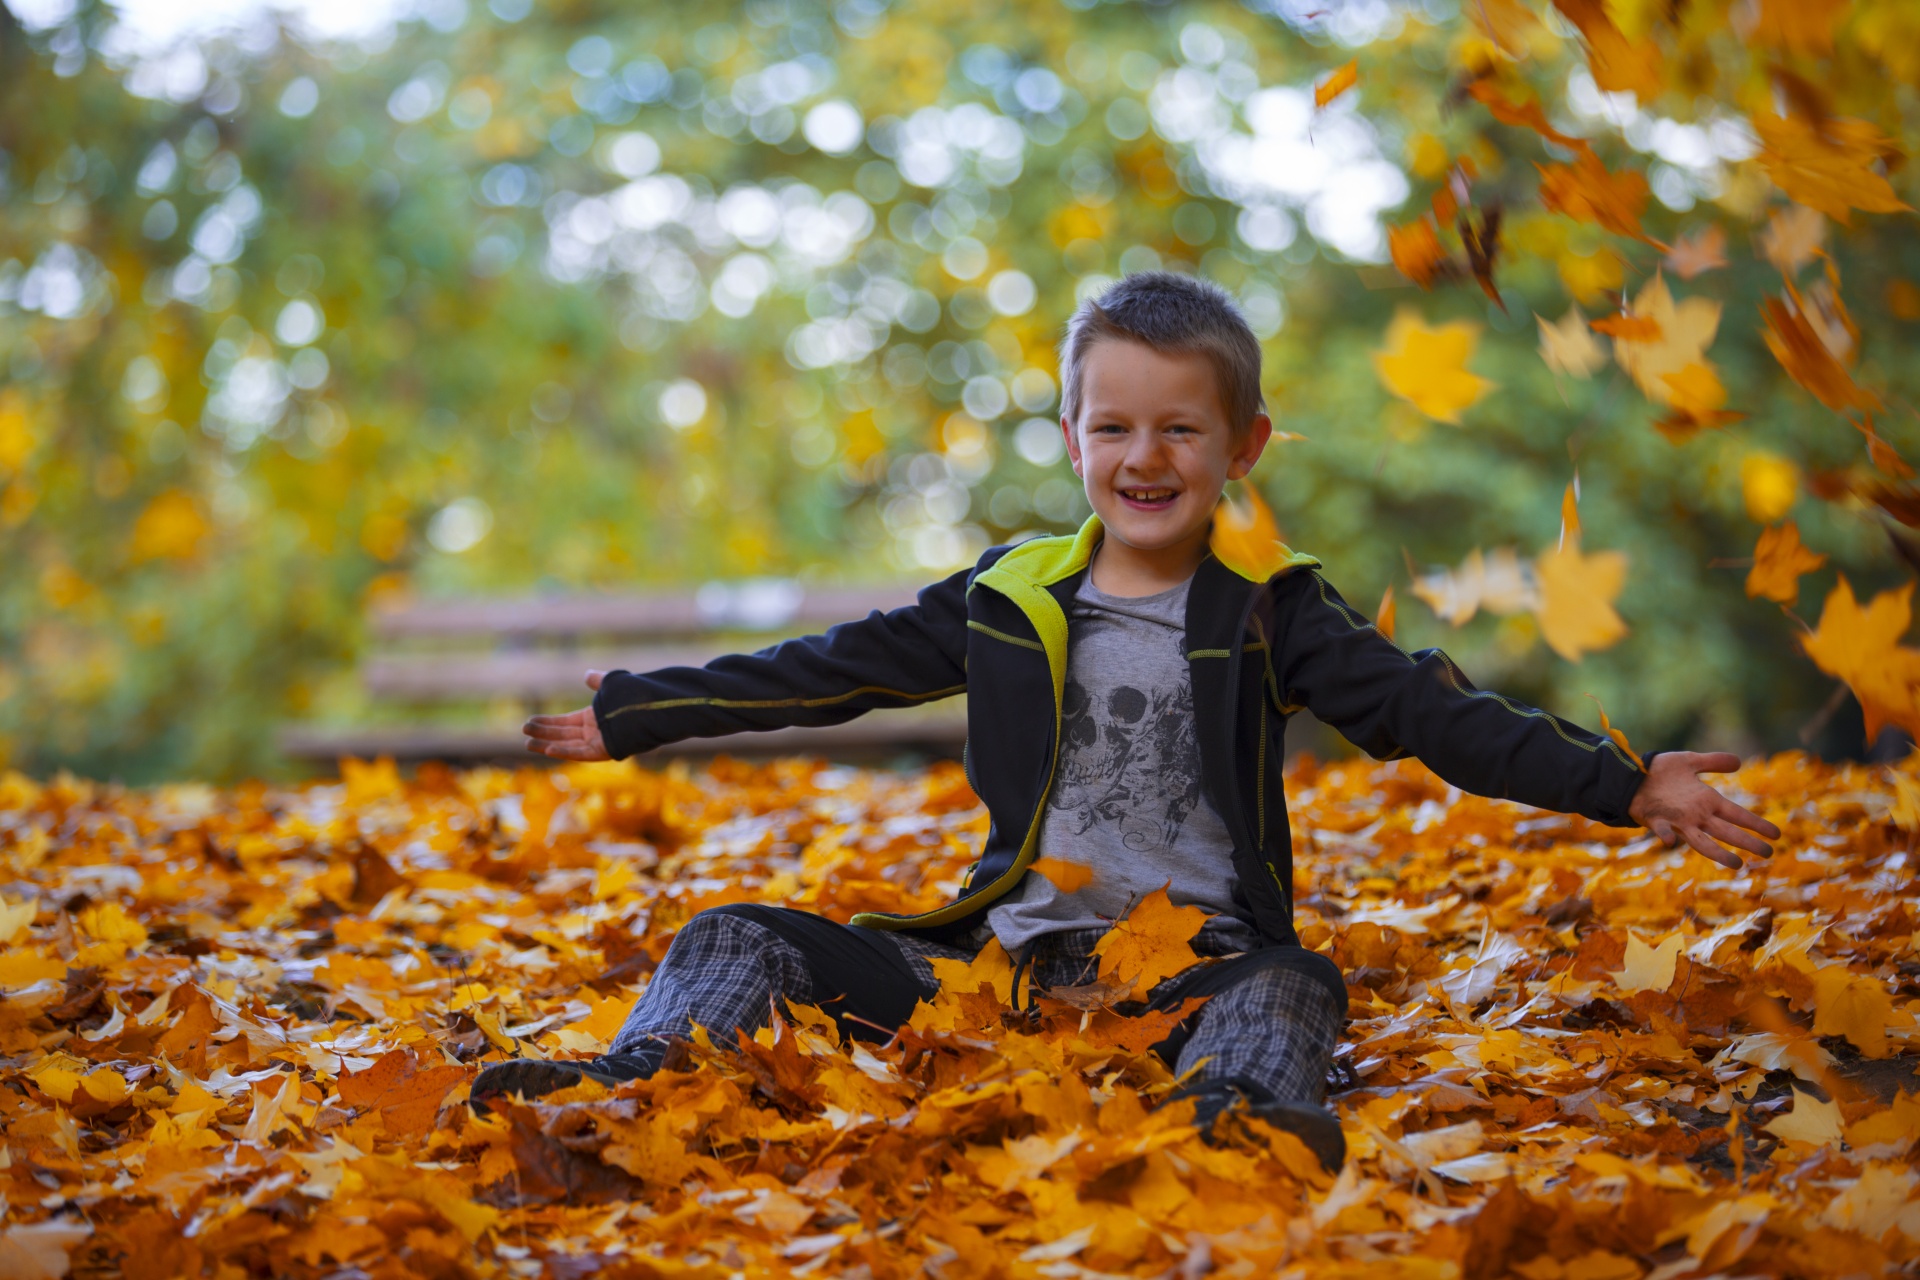 Poika istuu maassa metsässä syksyn lehtien ympäröimänä